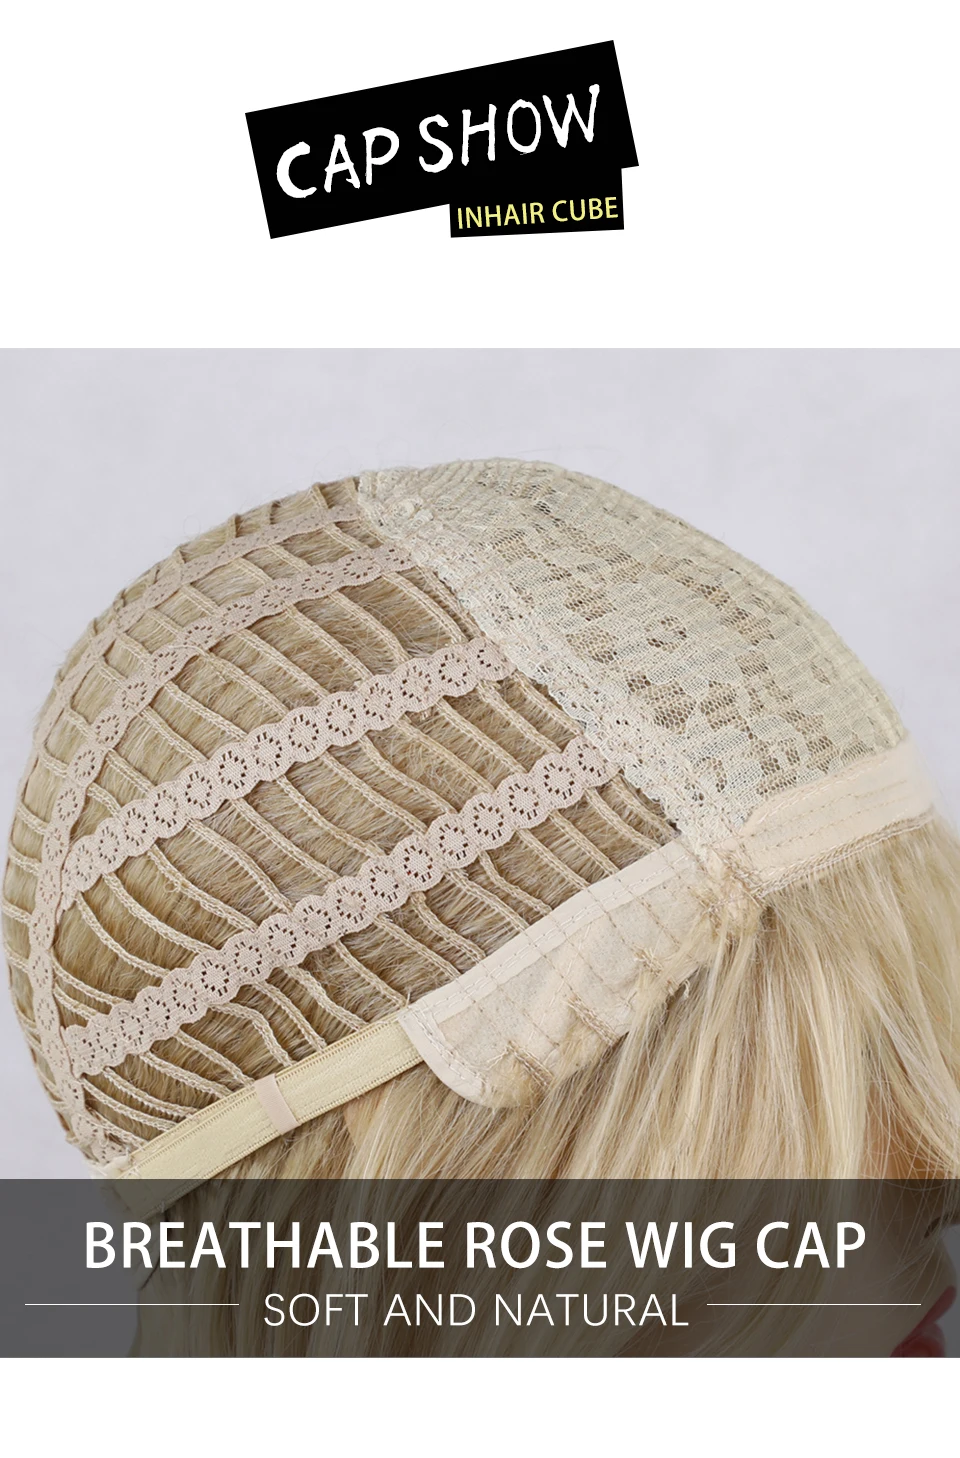 Inhair Cube 26 дюймов женские парики длинные натуральные волны синтетический слоистый стиль волос светильник коричневый с полным парики